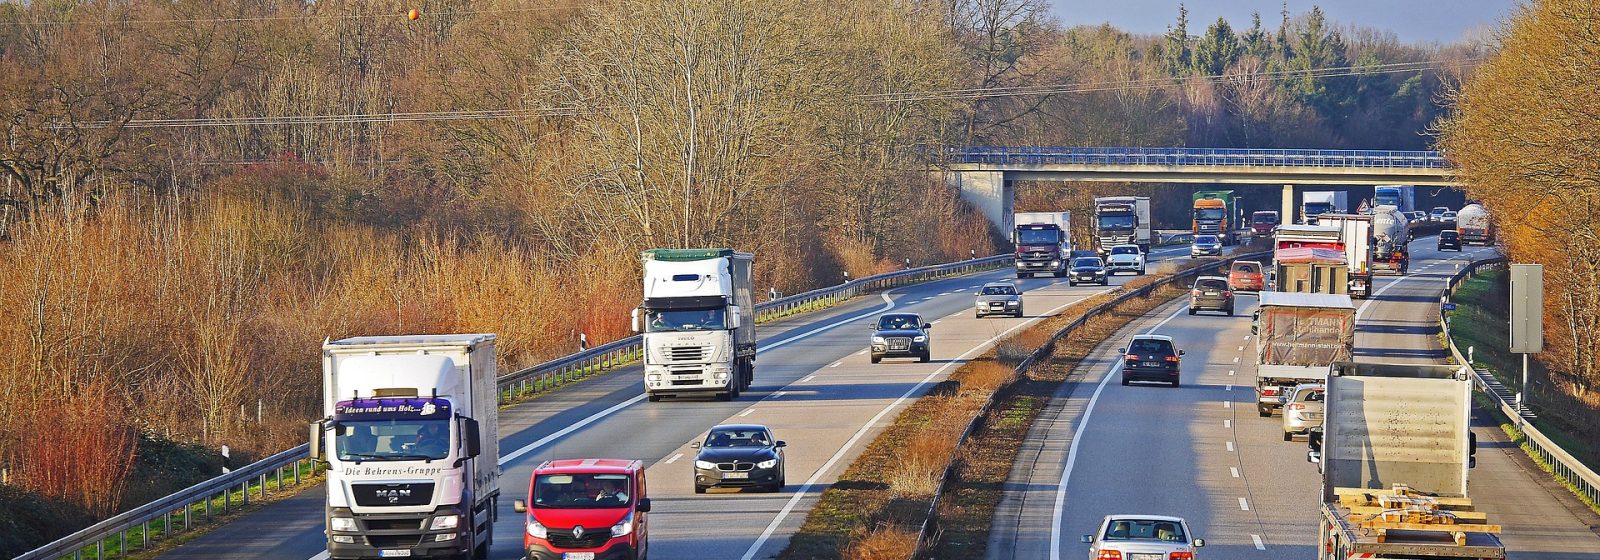 Vrachtwagens en personenwagens op snelweg